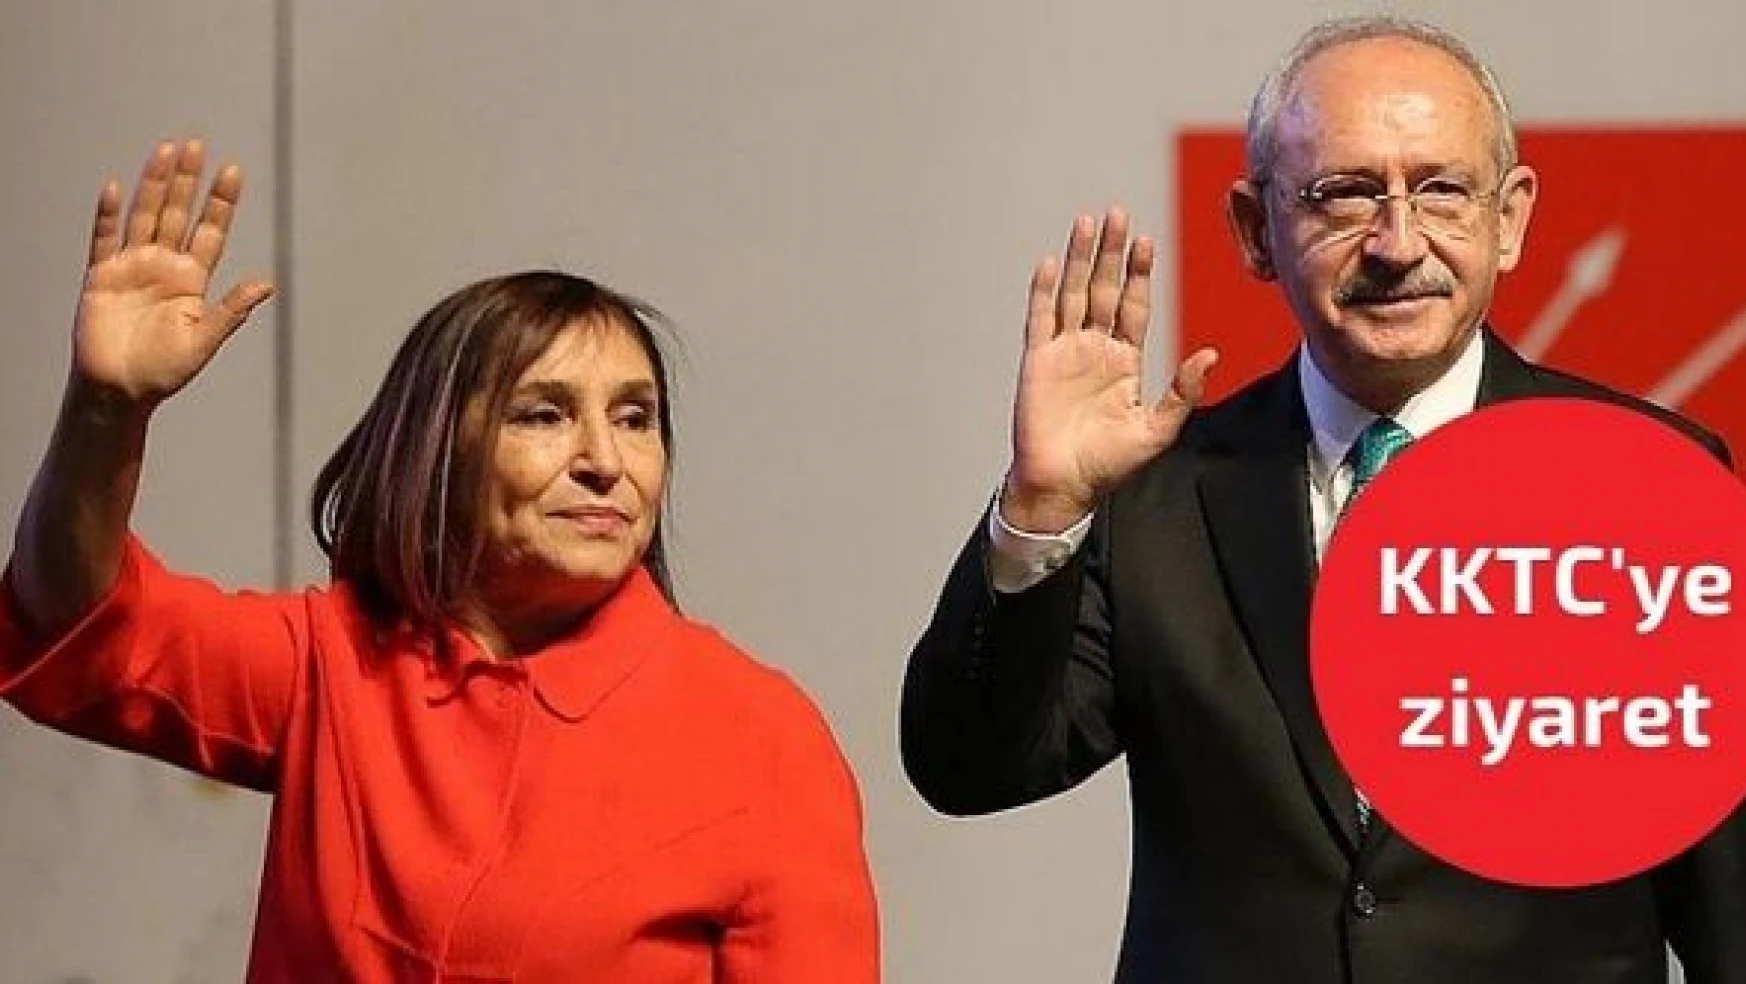 Kemal Kılıçdaroğlu eşiyle birlikte KKTC'de